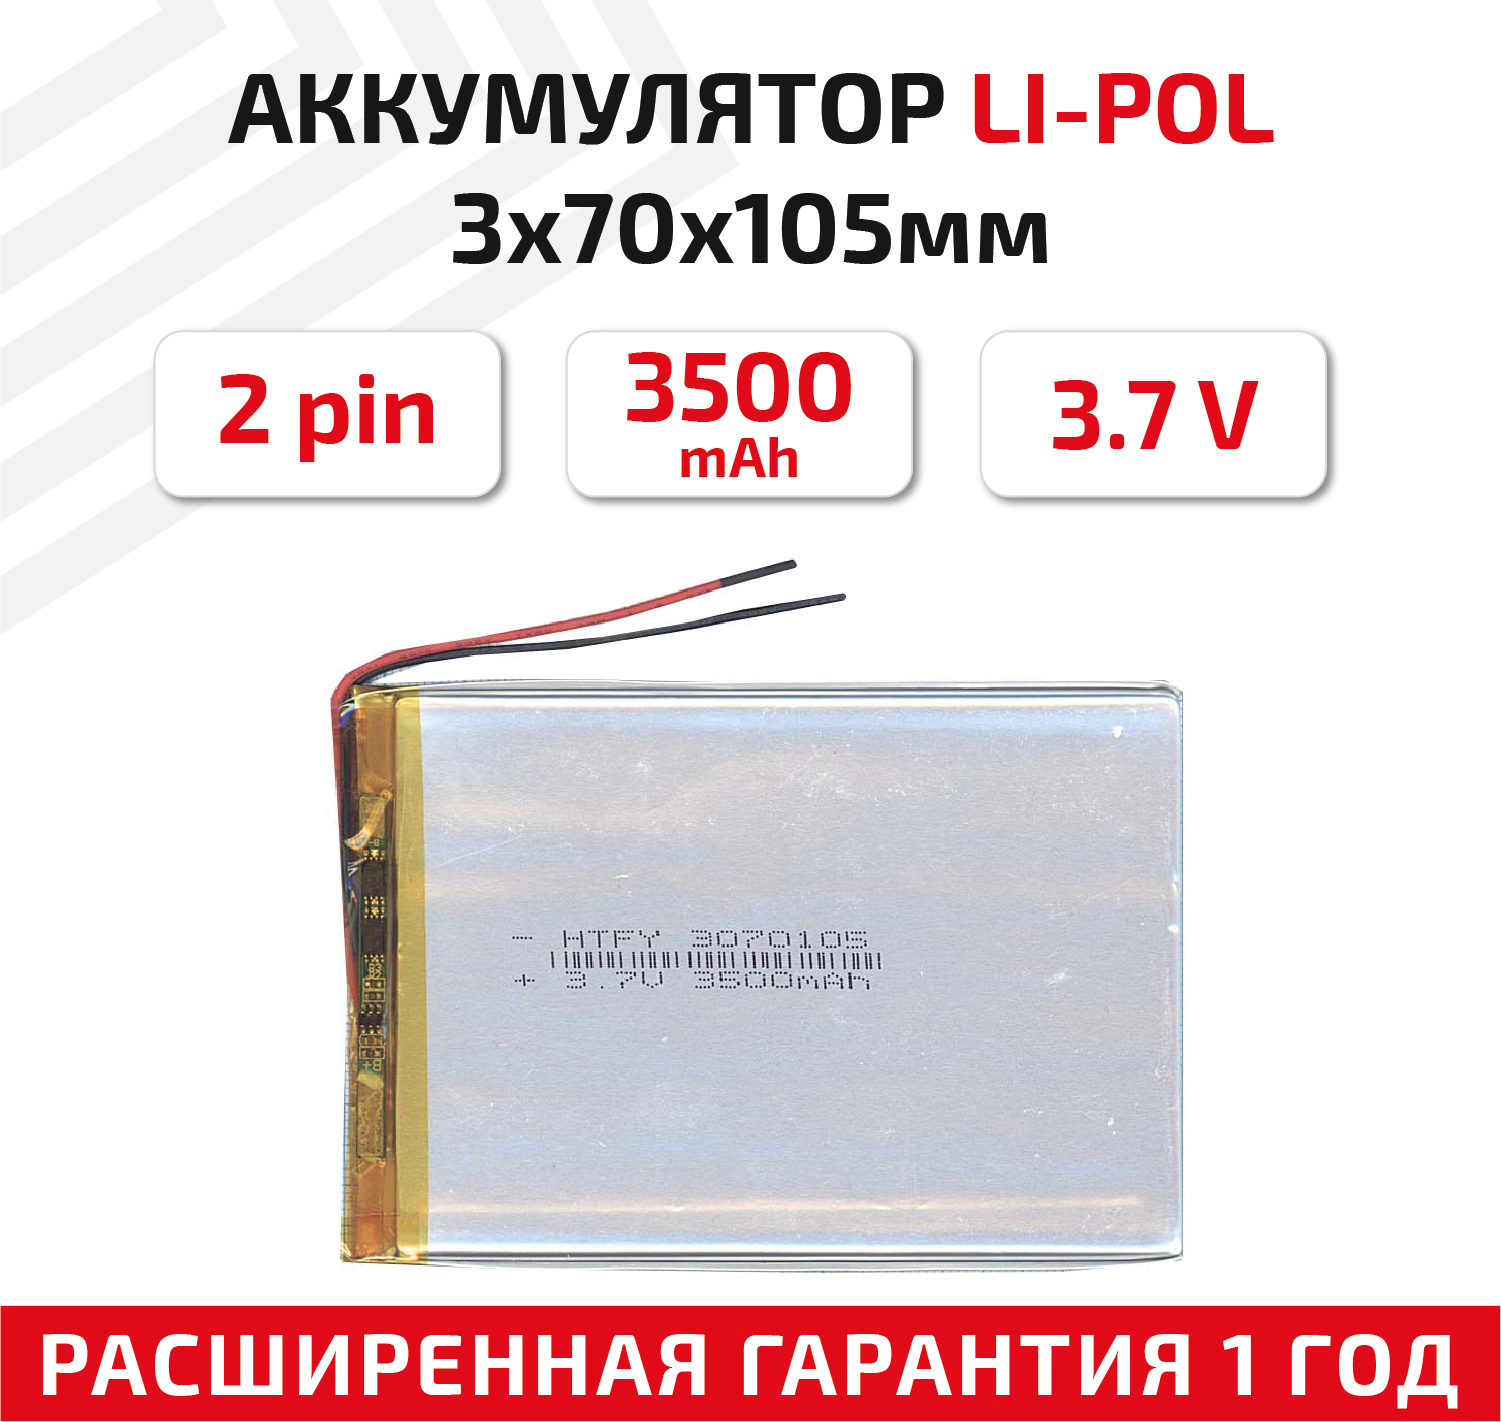 Универсальный аккумулятор (АКБ) для планшета, видеорегистратора и др, 3х70х105мм, 3500мАч, 3.7В, Li-Pol, 2pin (на 2 провода)